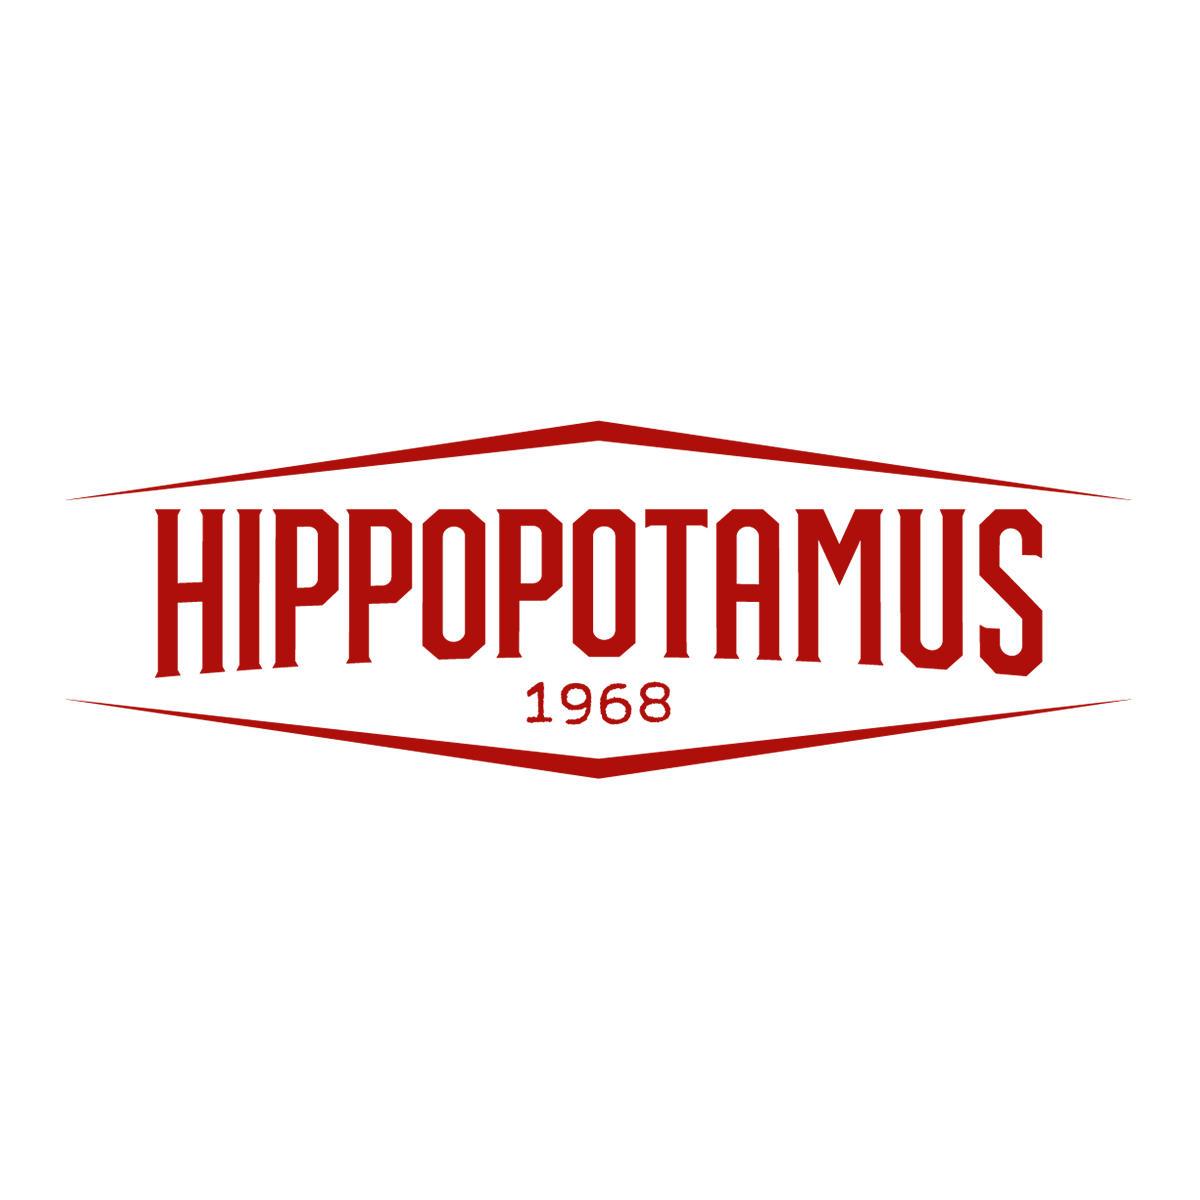 Hippopotamus Steakhouse Pontault Combault